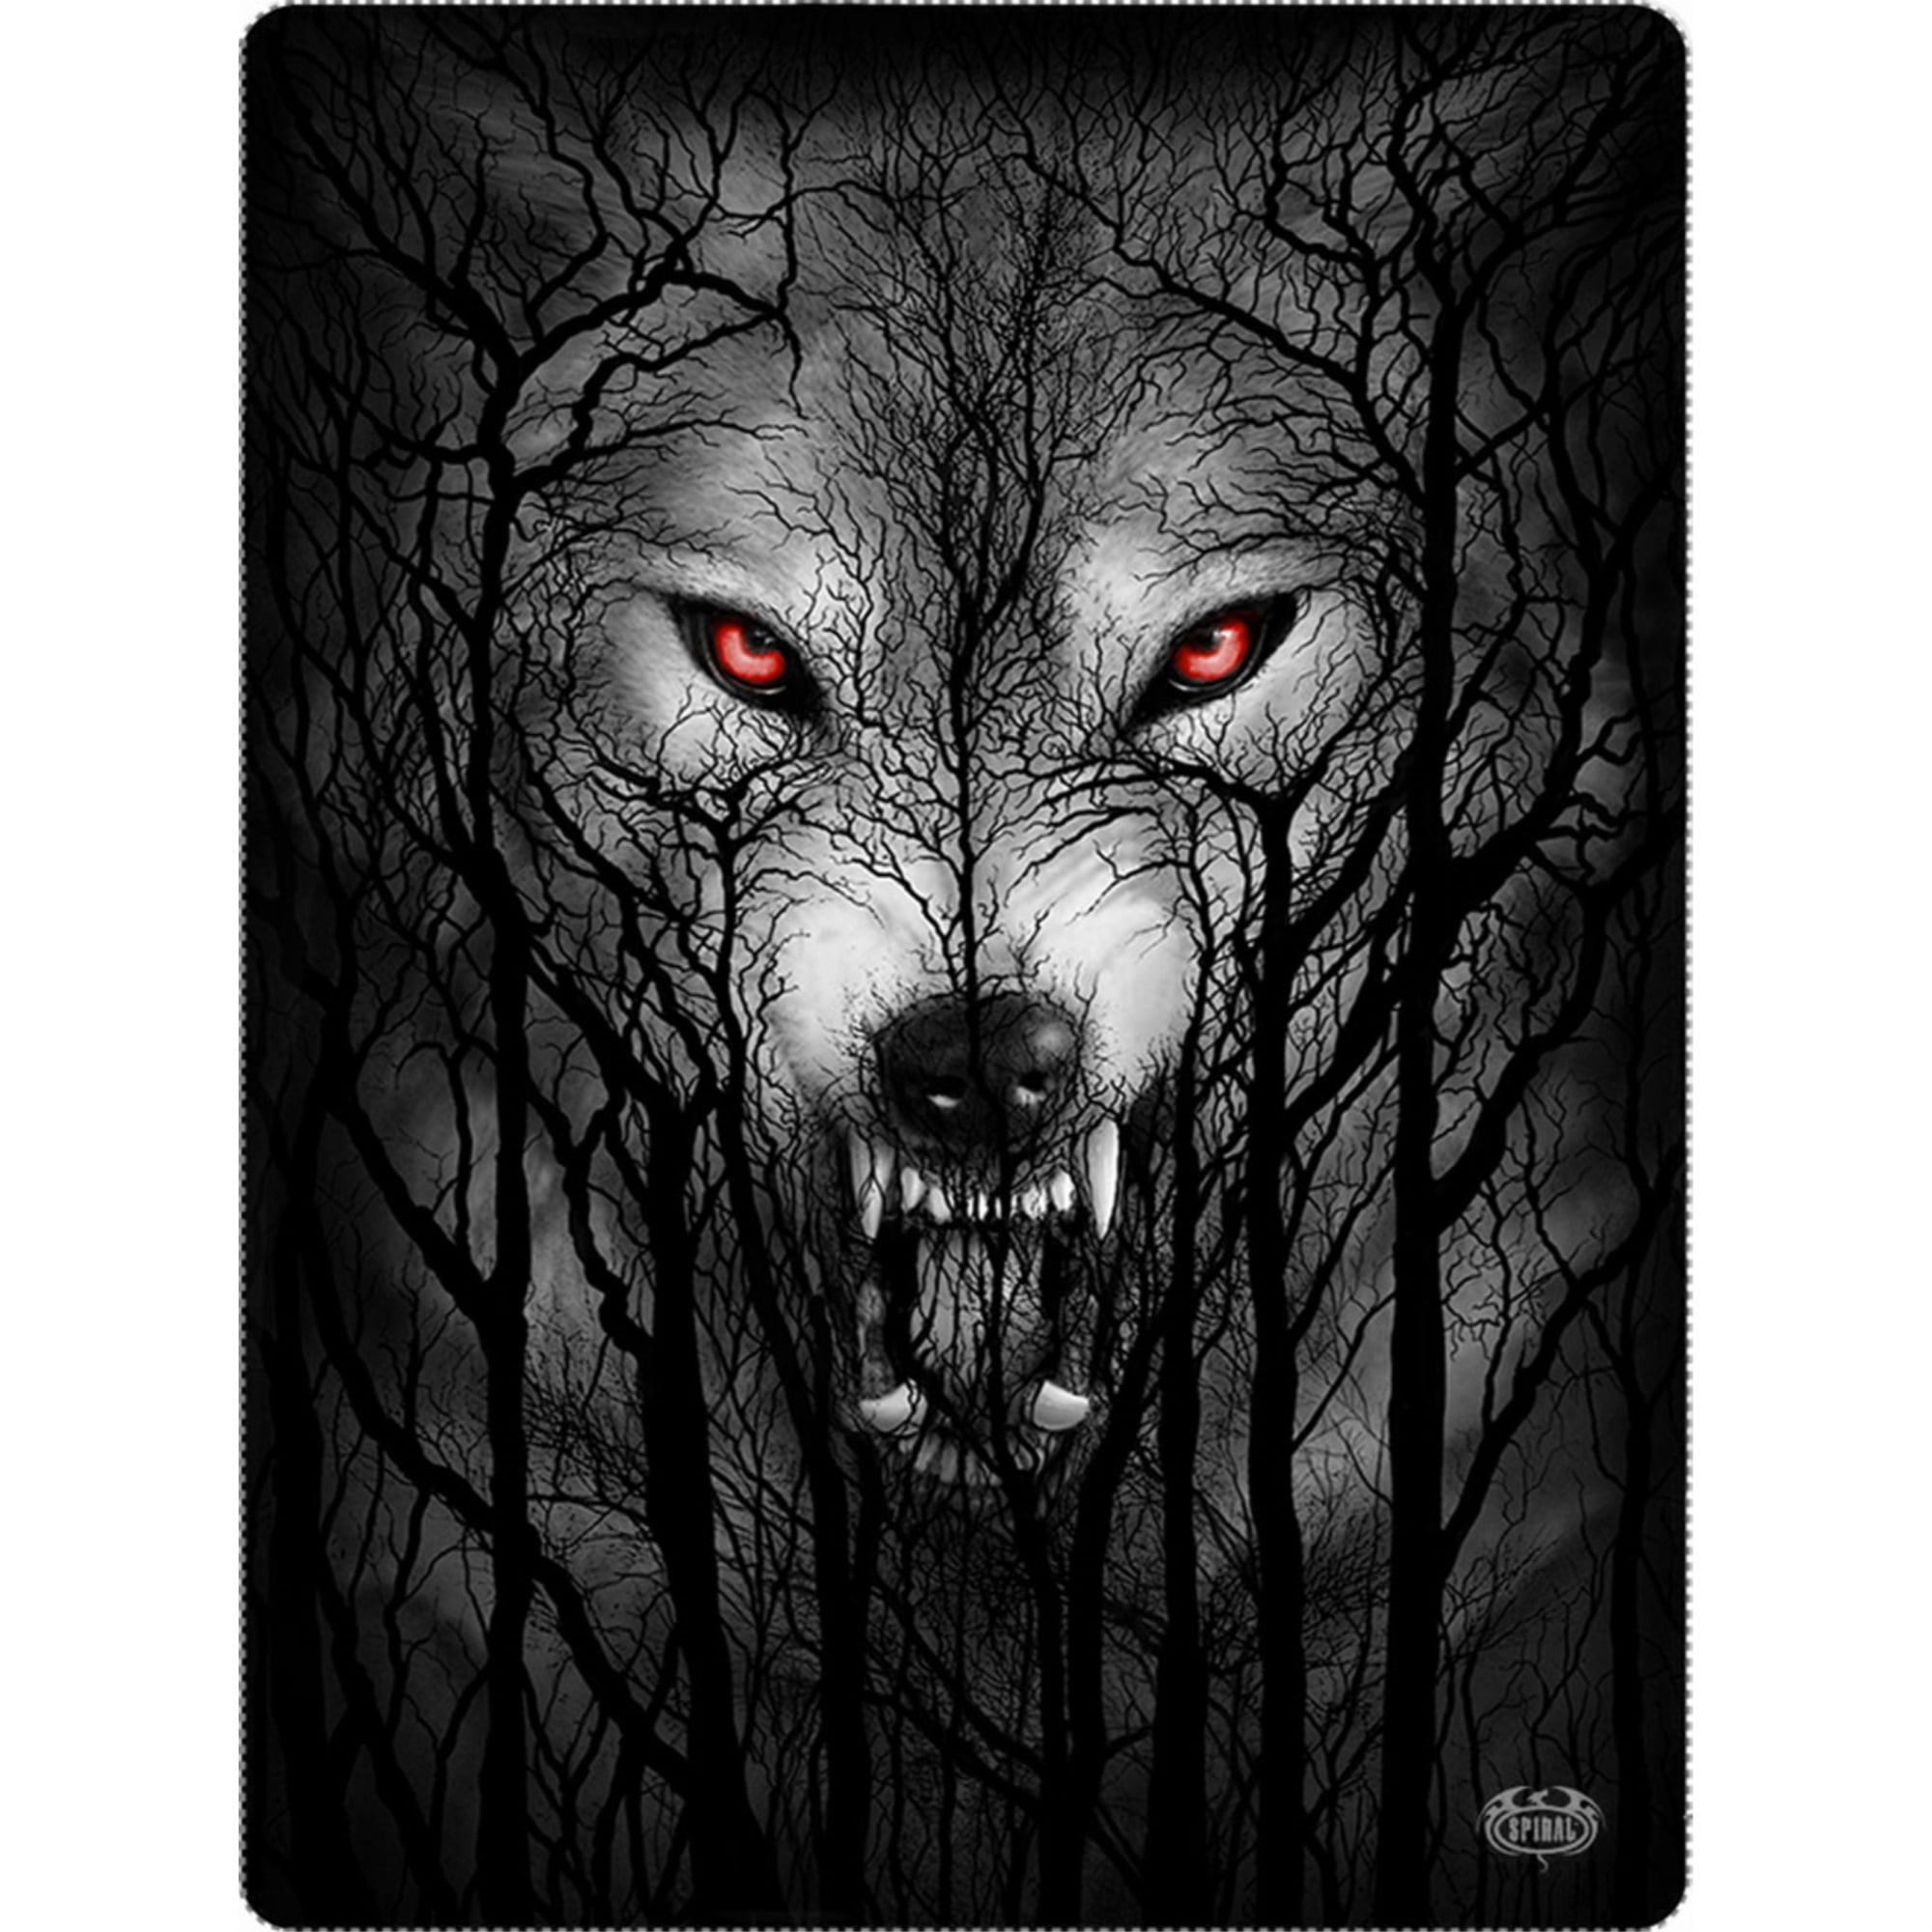 Howling wolves black metal toilet tissue holder 